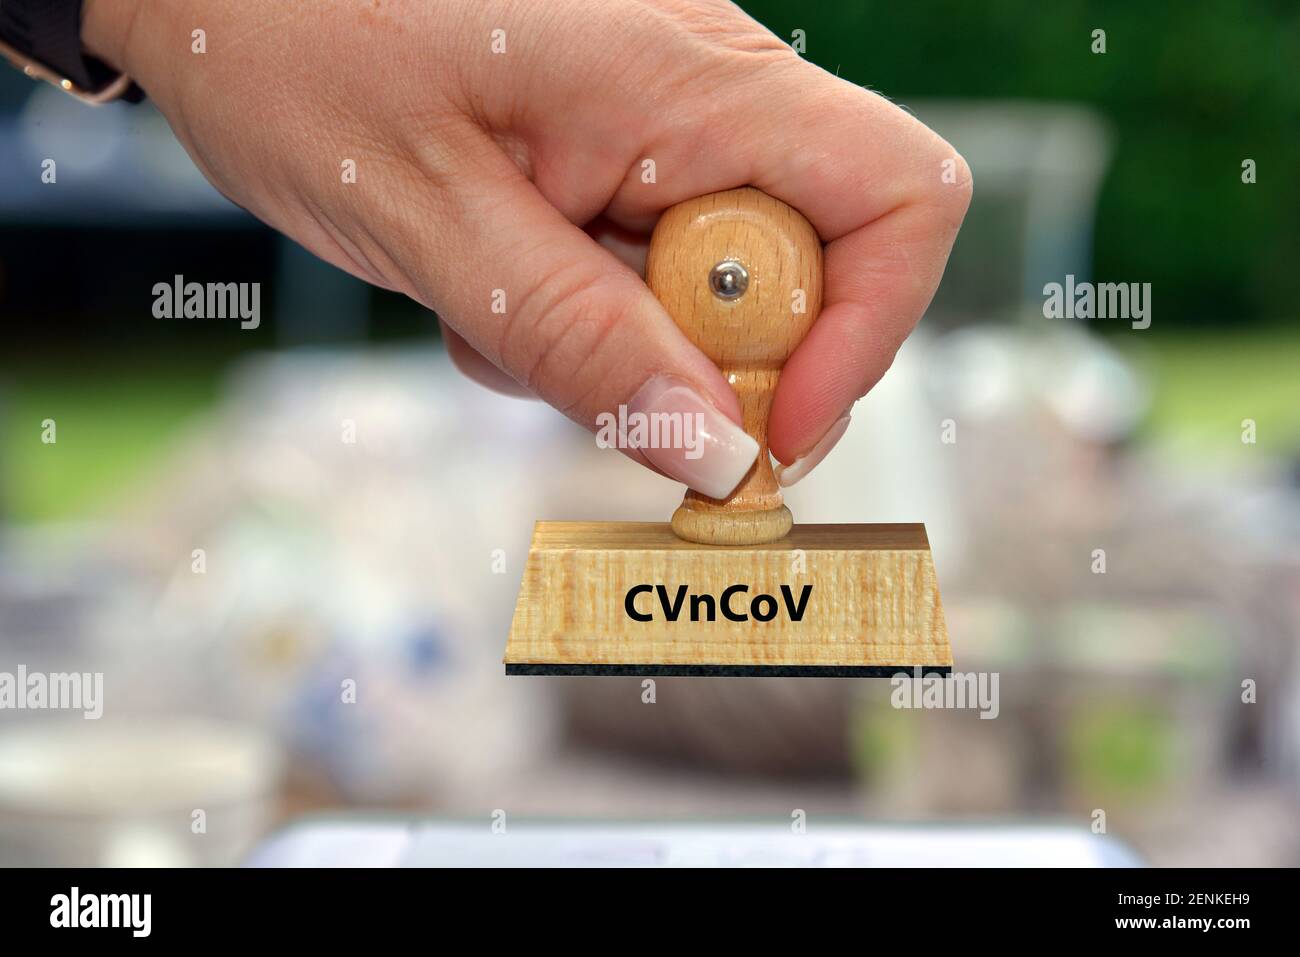 Stempel, Holzstempel, Aufschrift: CVnCoV, CureVac, Impfstoffhersteller, Impfstoff, Pharmaunternehmen, Covid-19 Impfstoff, Forschung, mRNA-Impfstoff, Foto de stock